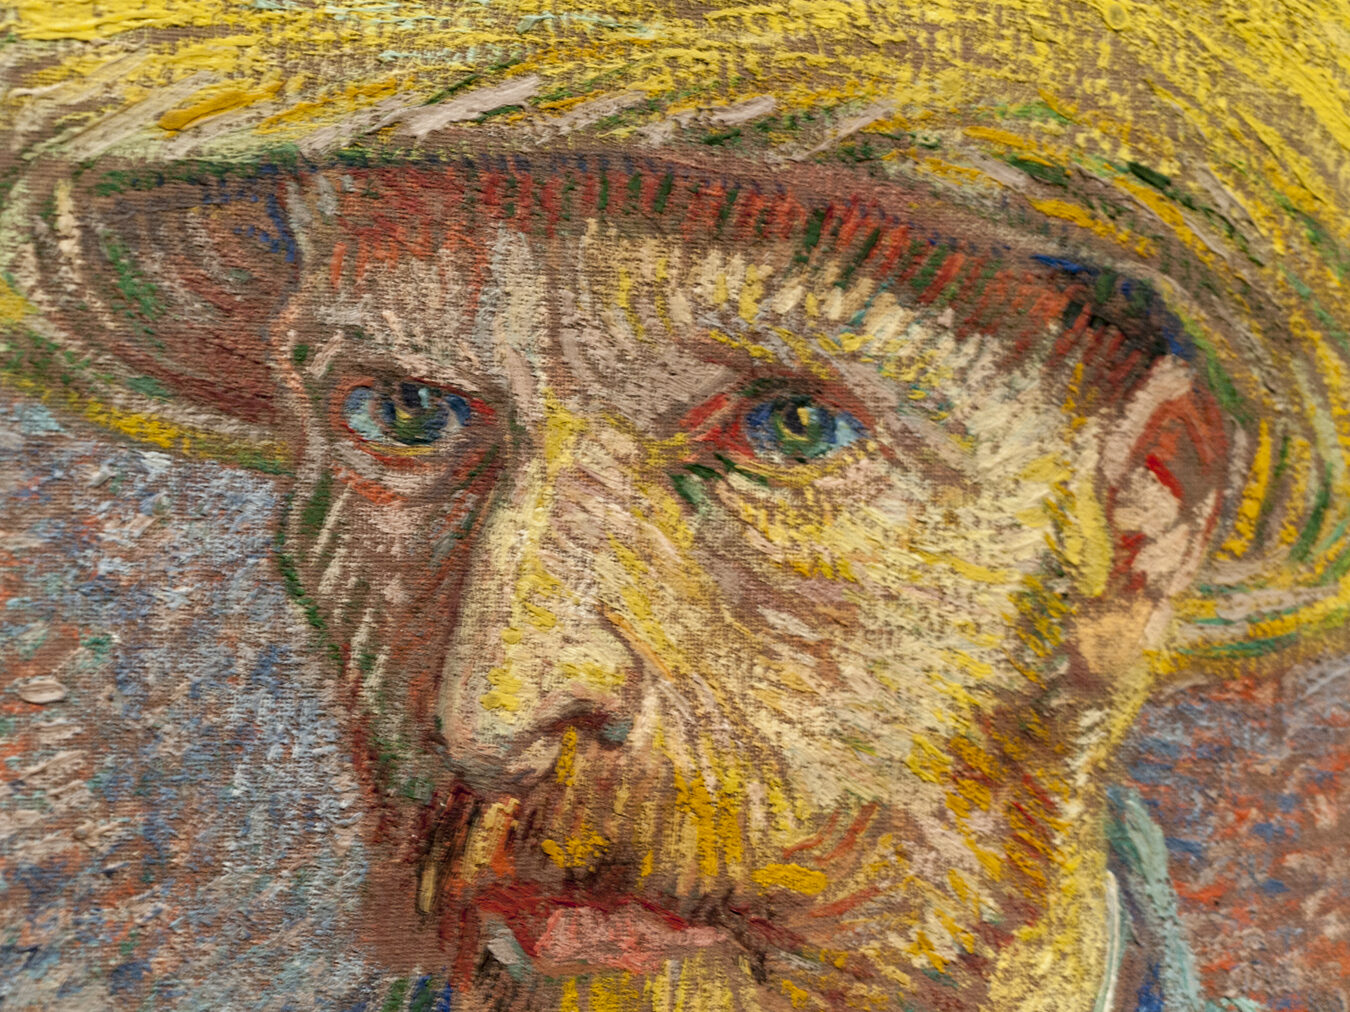 La vida y obra de Vincent van Gogh: Un genio atormentado por la pasión artística